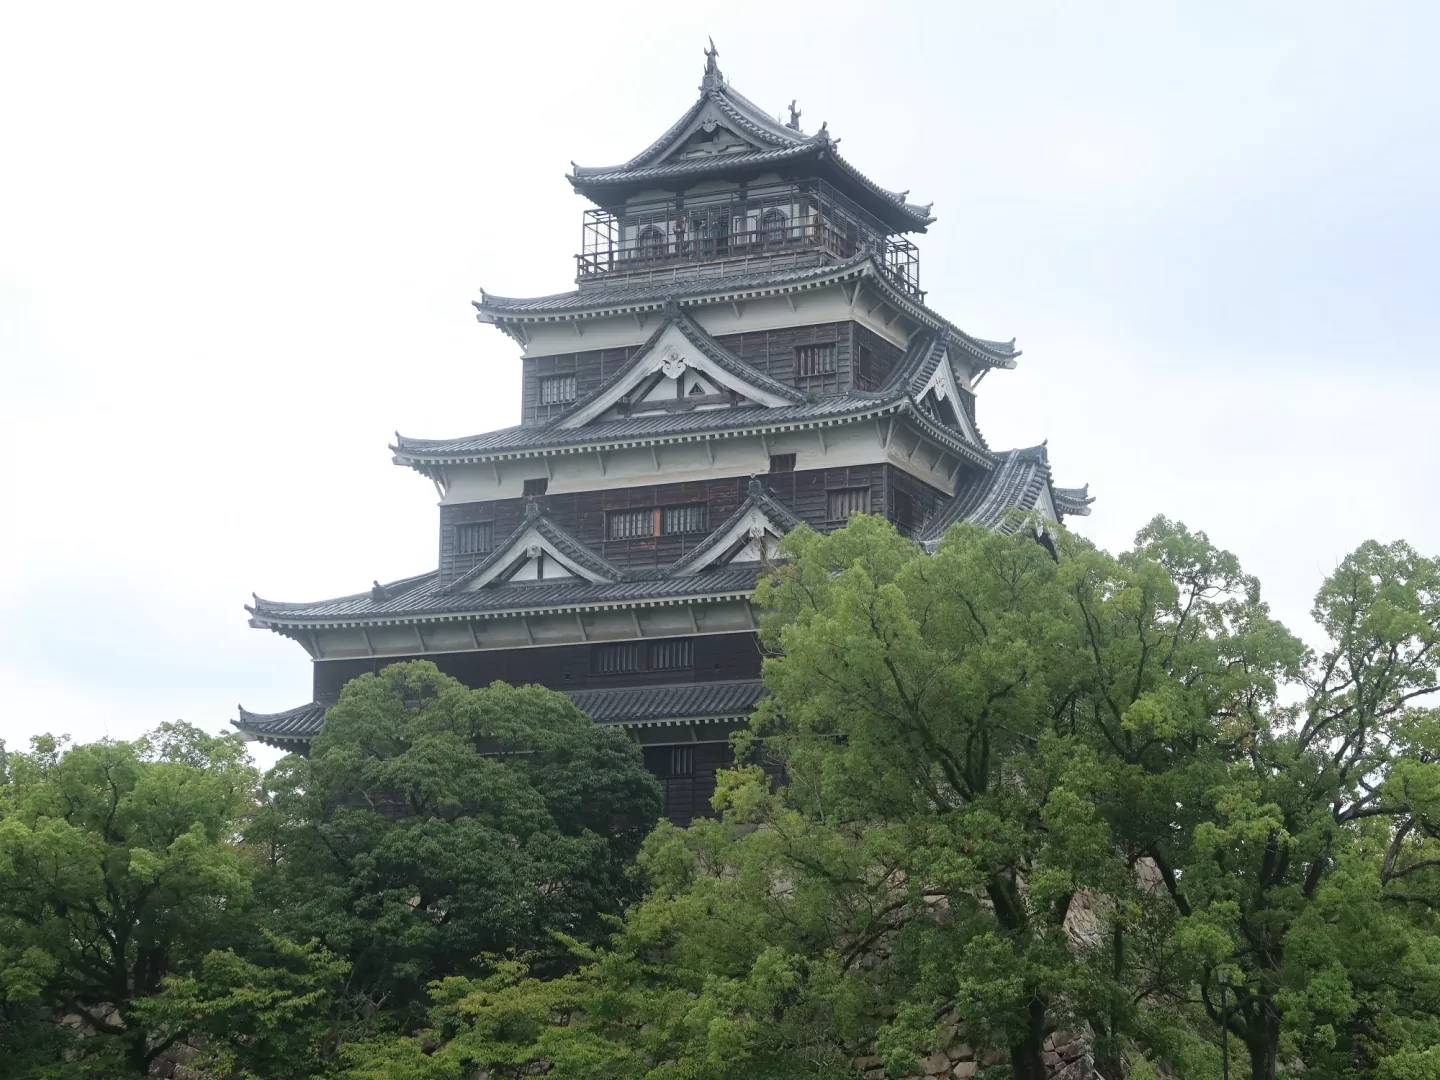 広島城 天守閣 北側から撮影